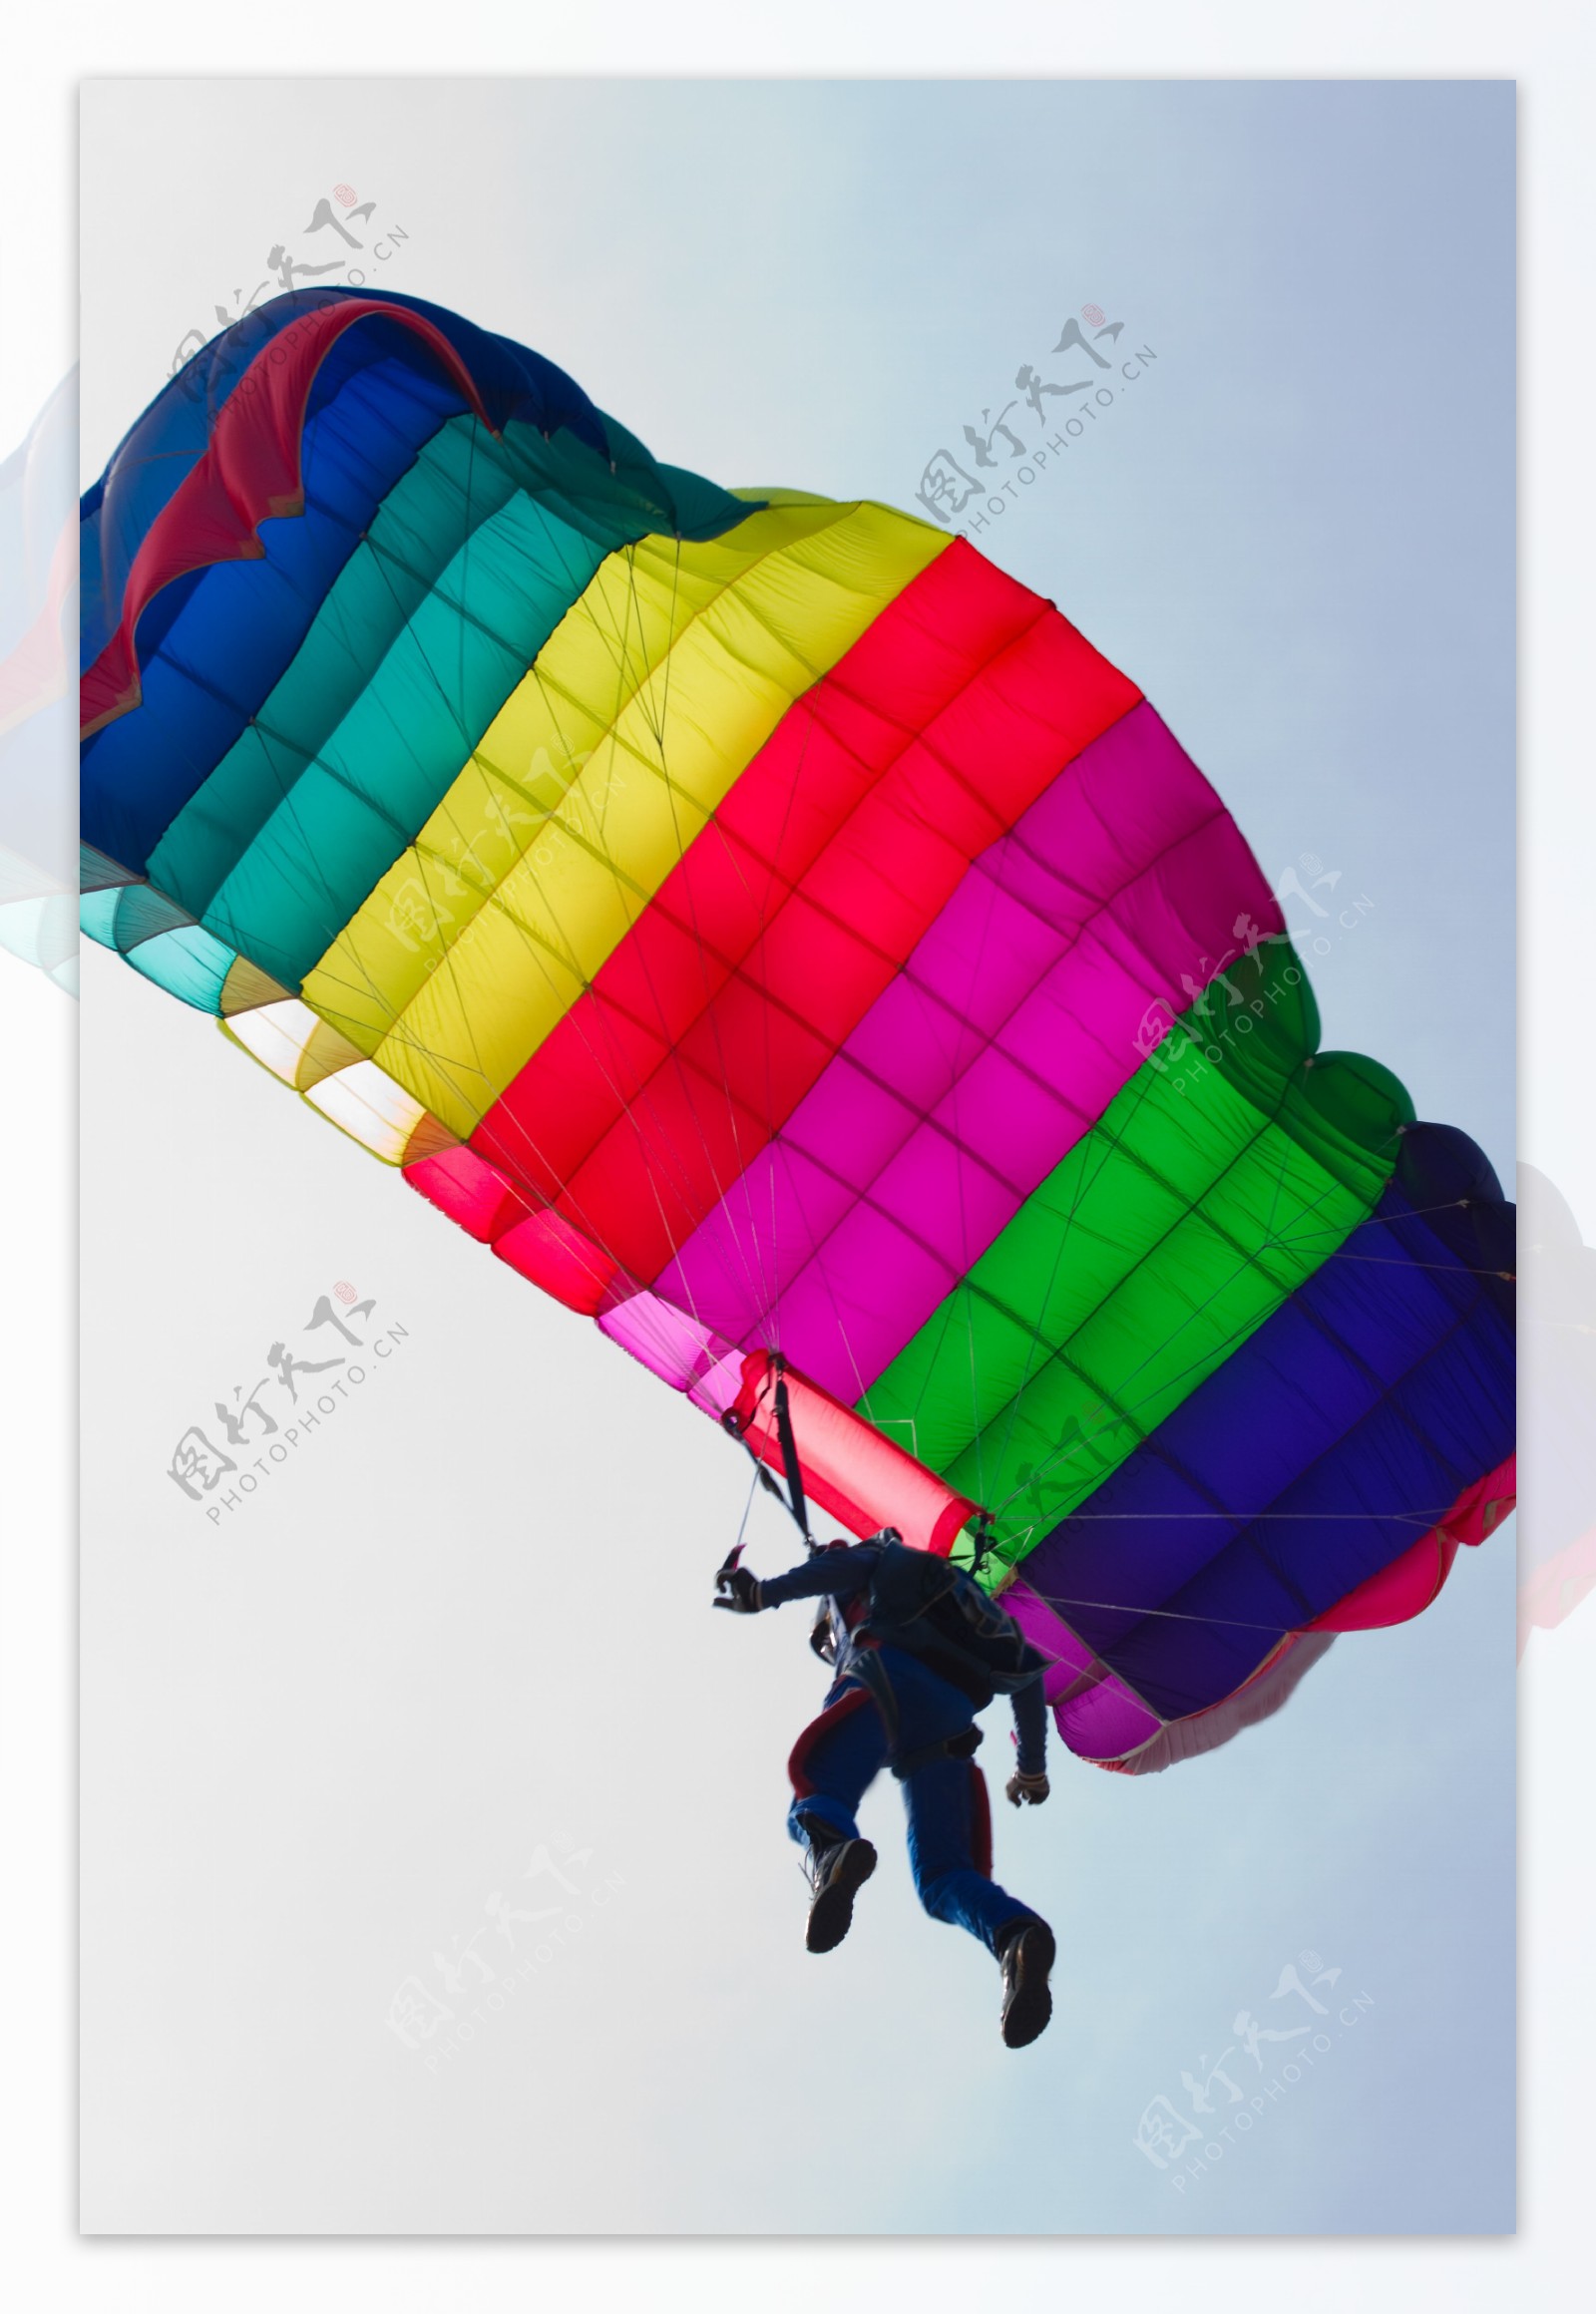 空中的滑翔伞图片